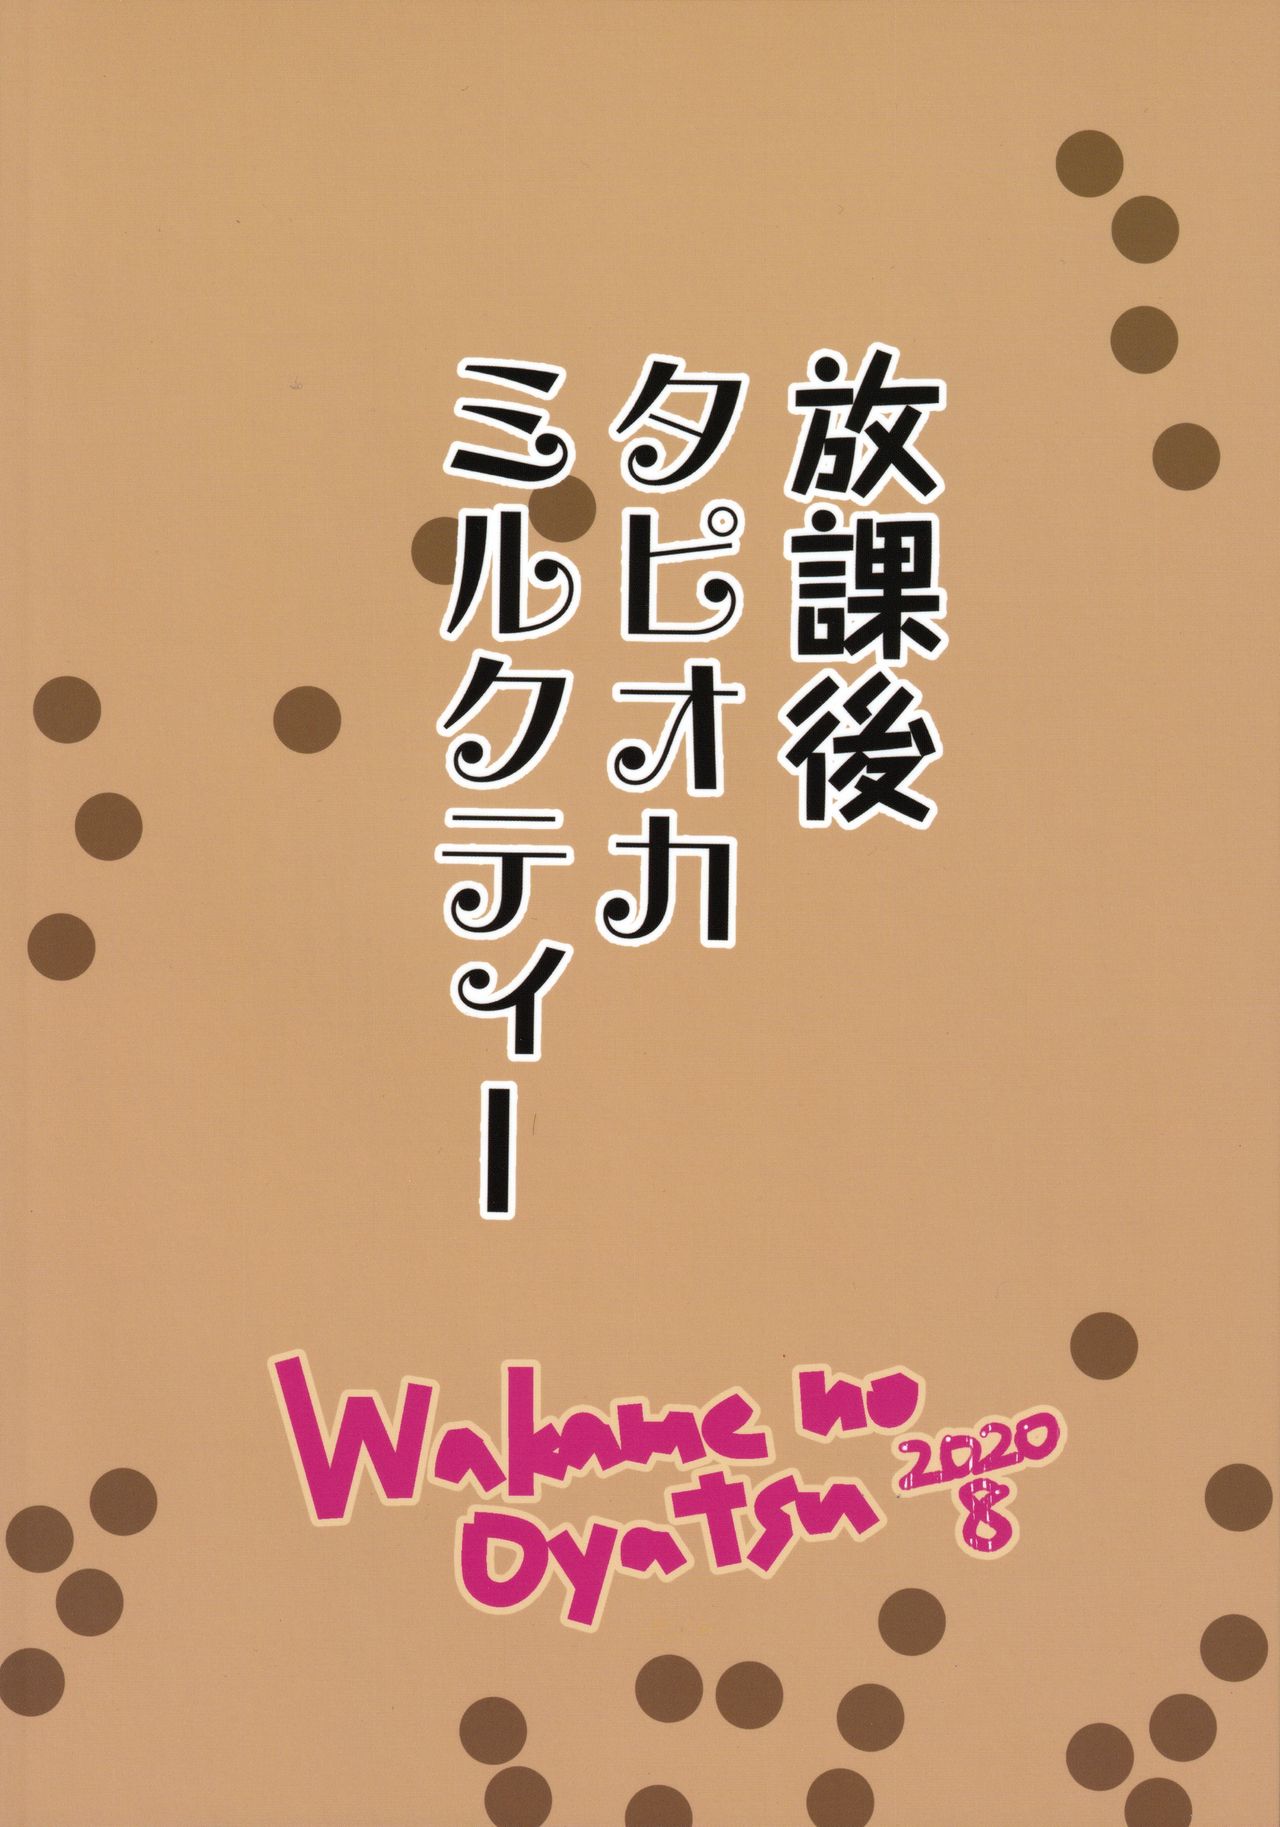 [Wakame no Oyatsu (梅モツ蔵)] 放課後タピオカミルクティー